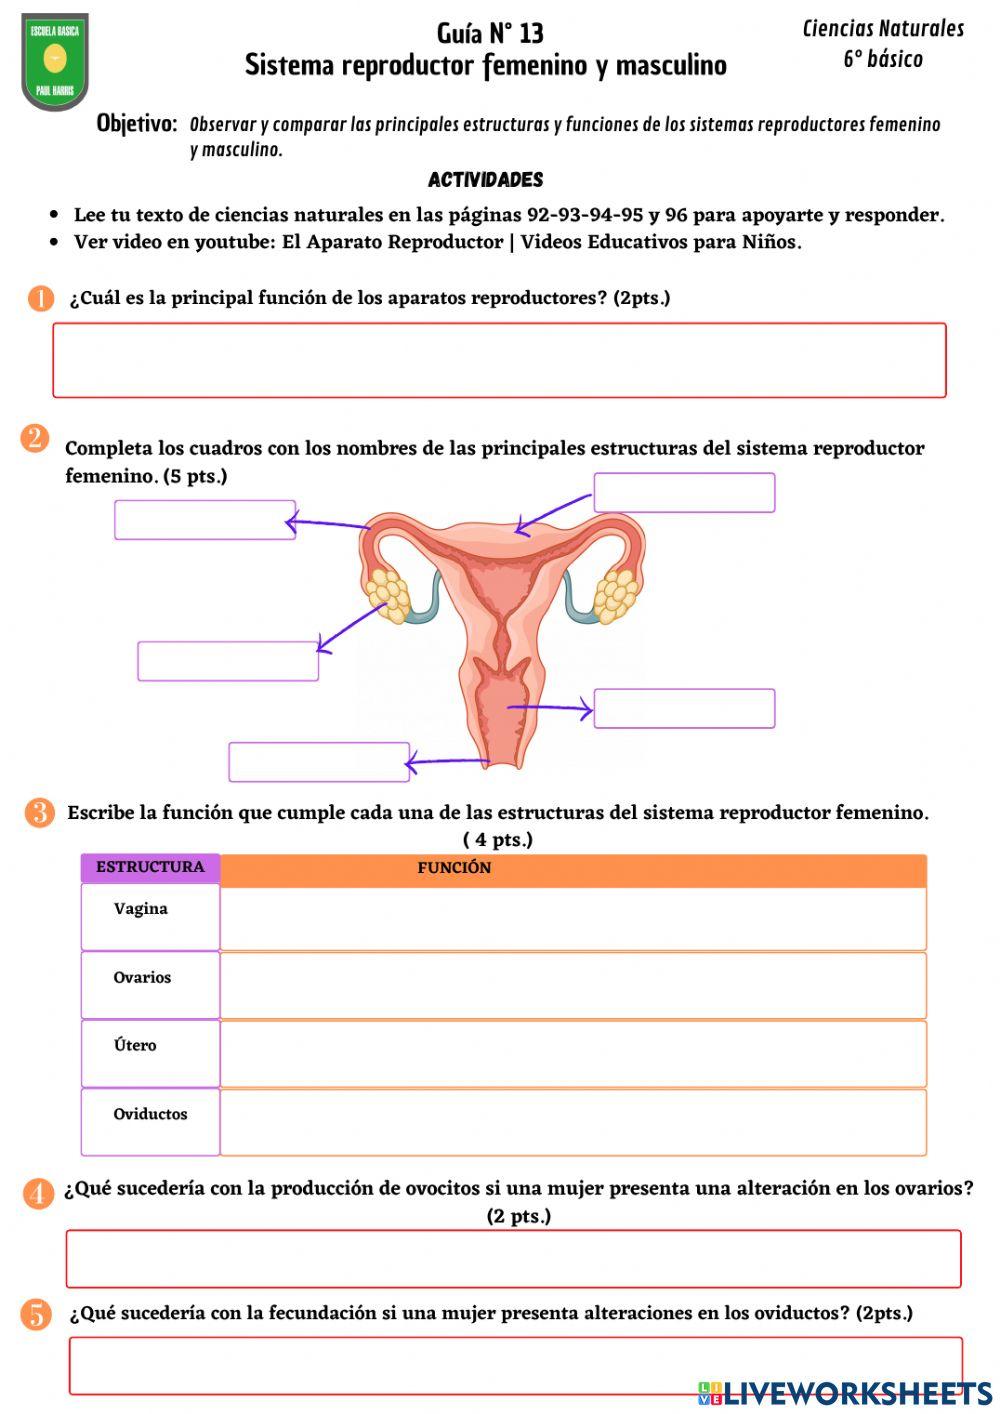 Guía N° 13- Sistemas reproductores